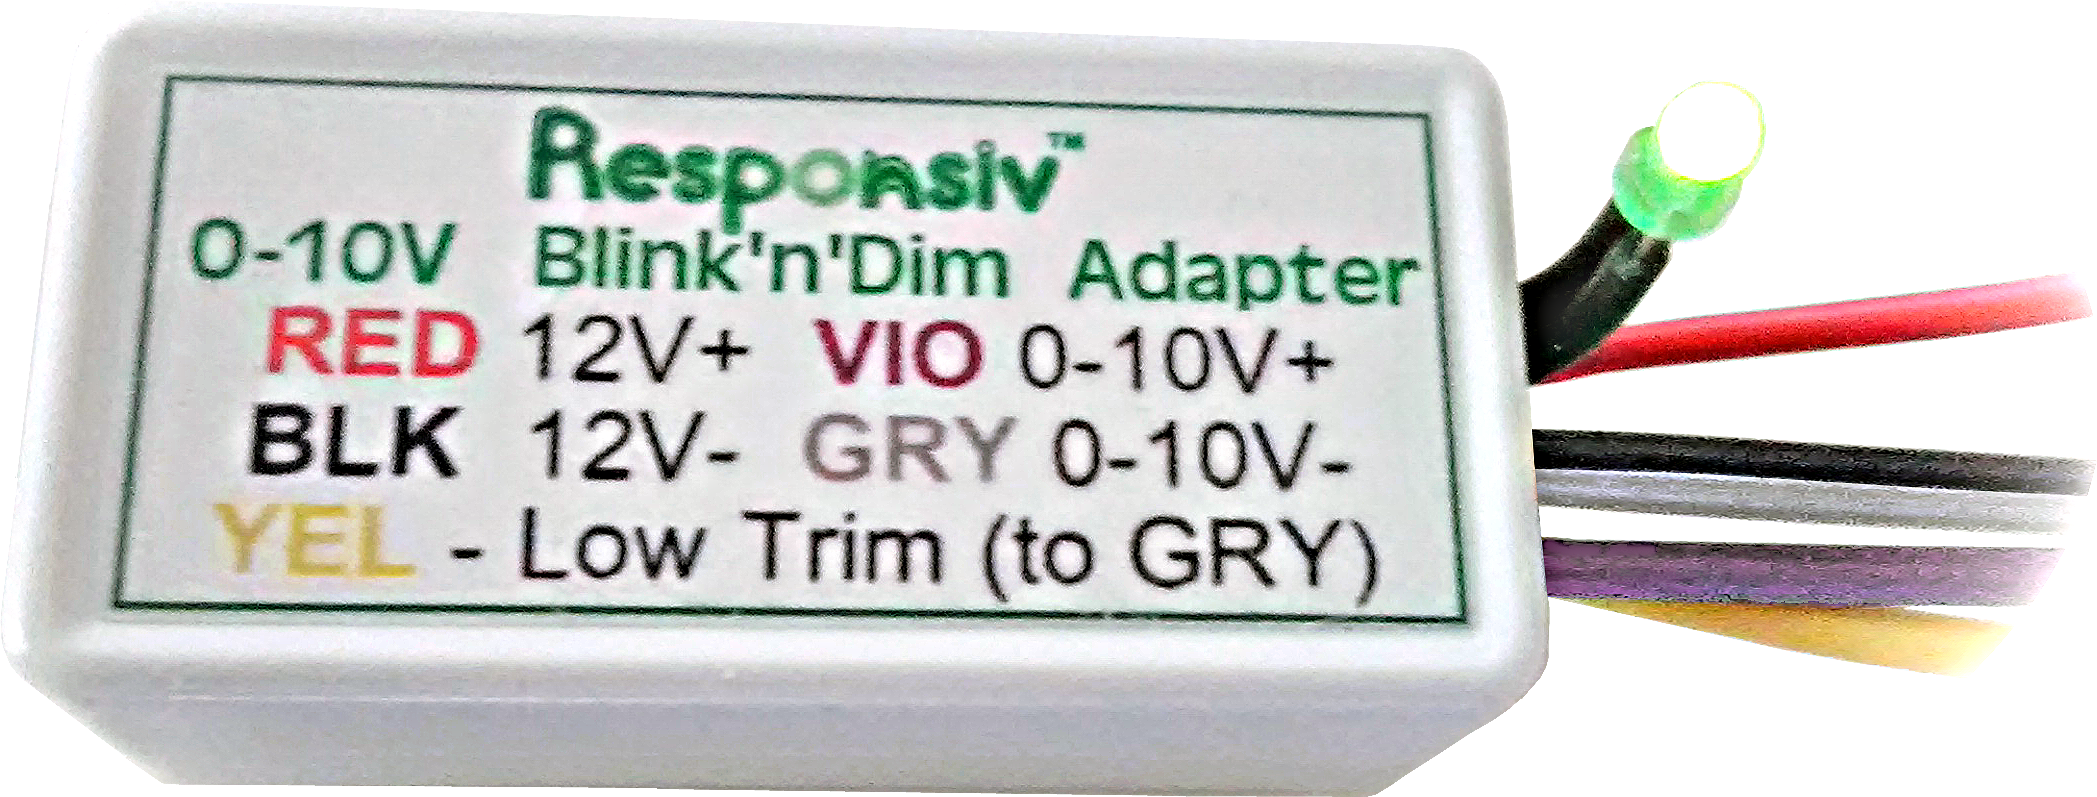 0-10V Blink'n'Dim Adapter